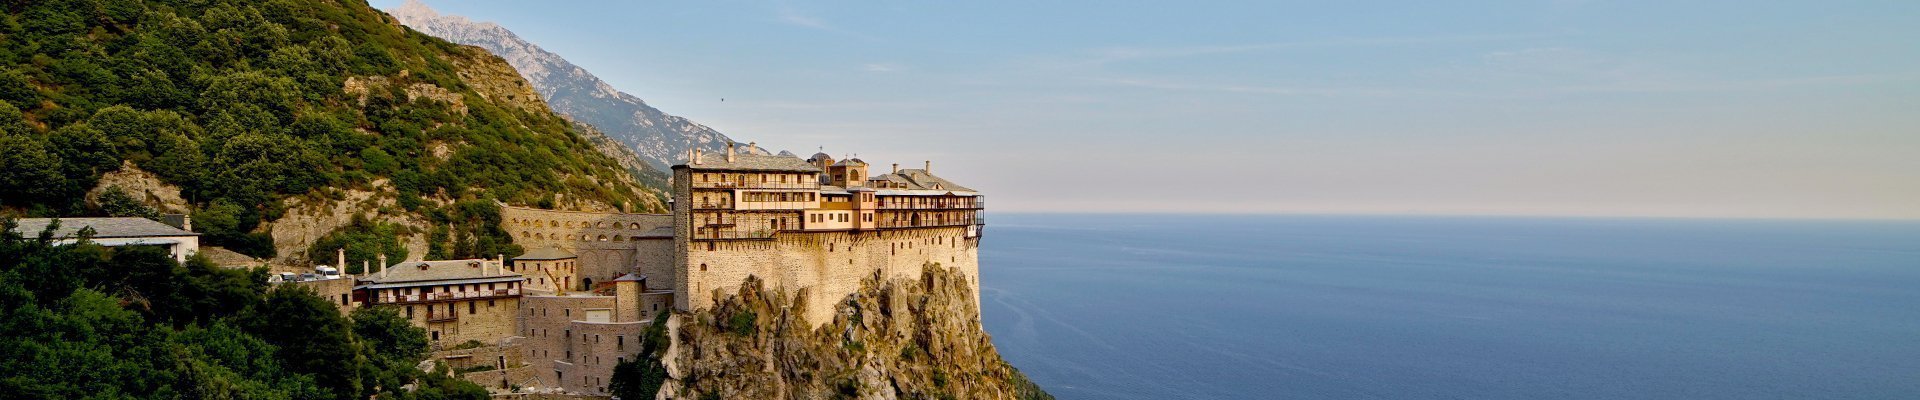 Heilige berg Athos in Griekenland